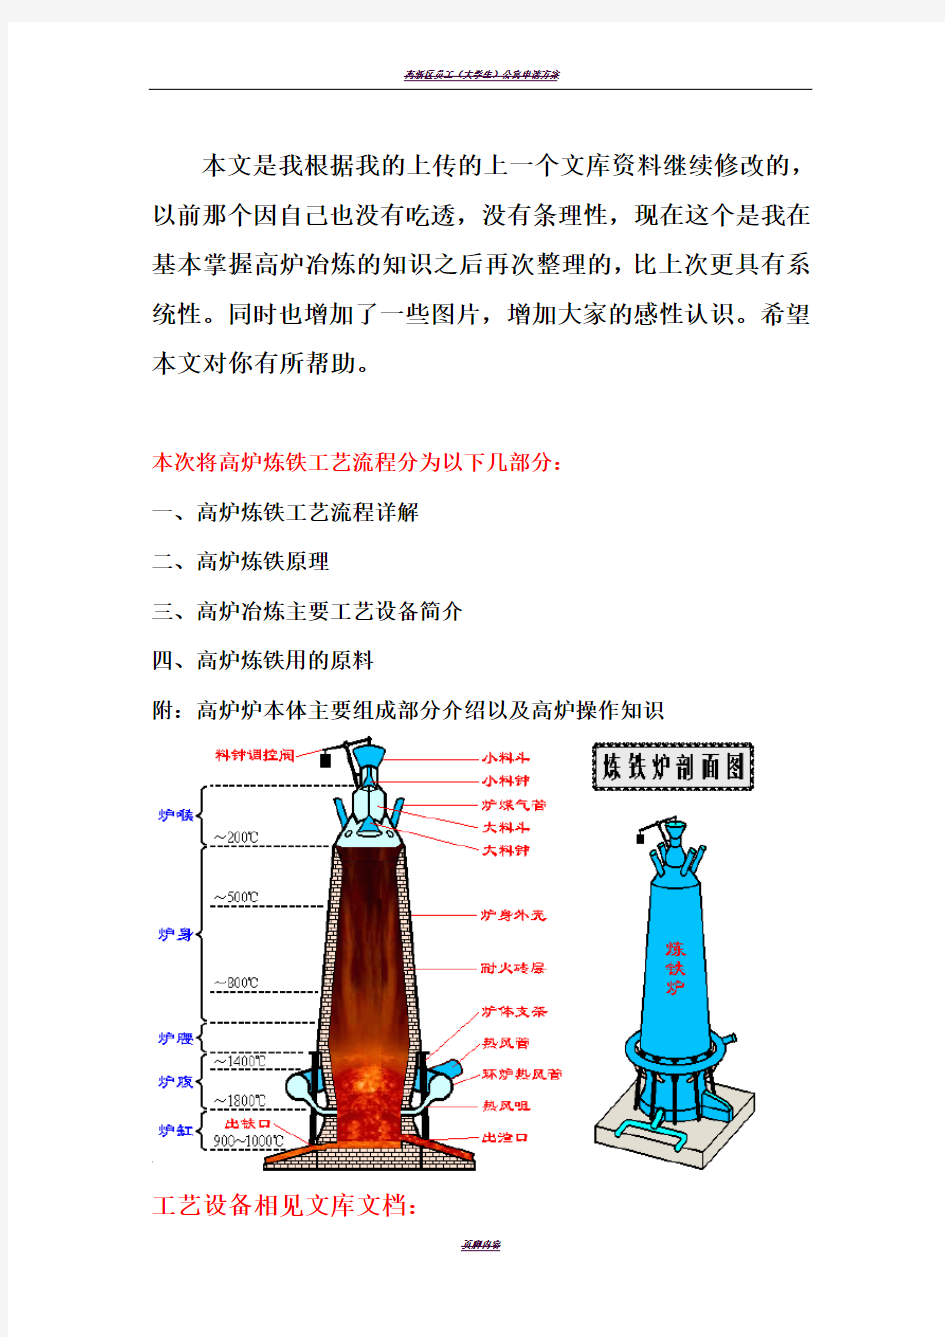 高炉炼铁工艺流程(经典)61411